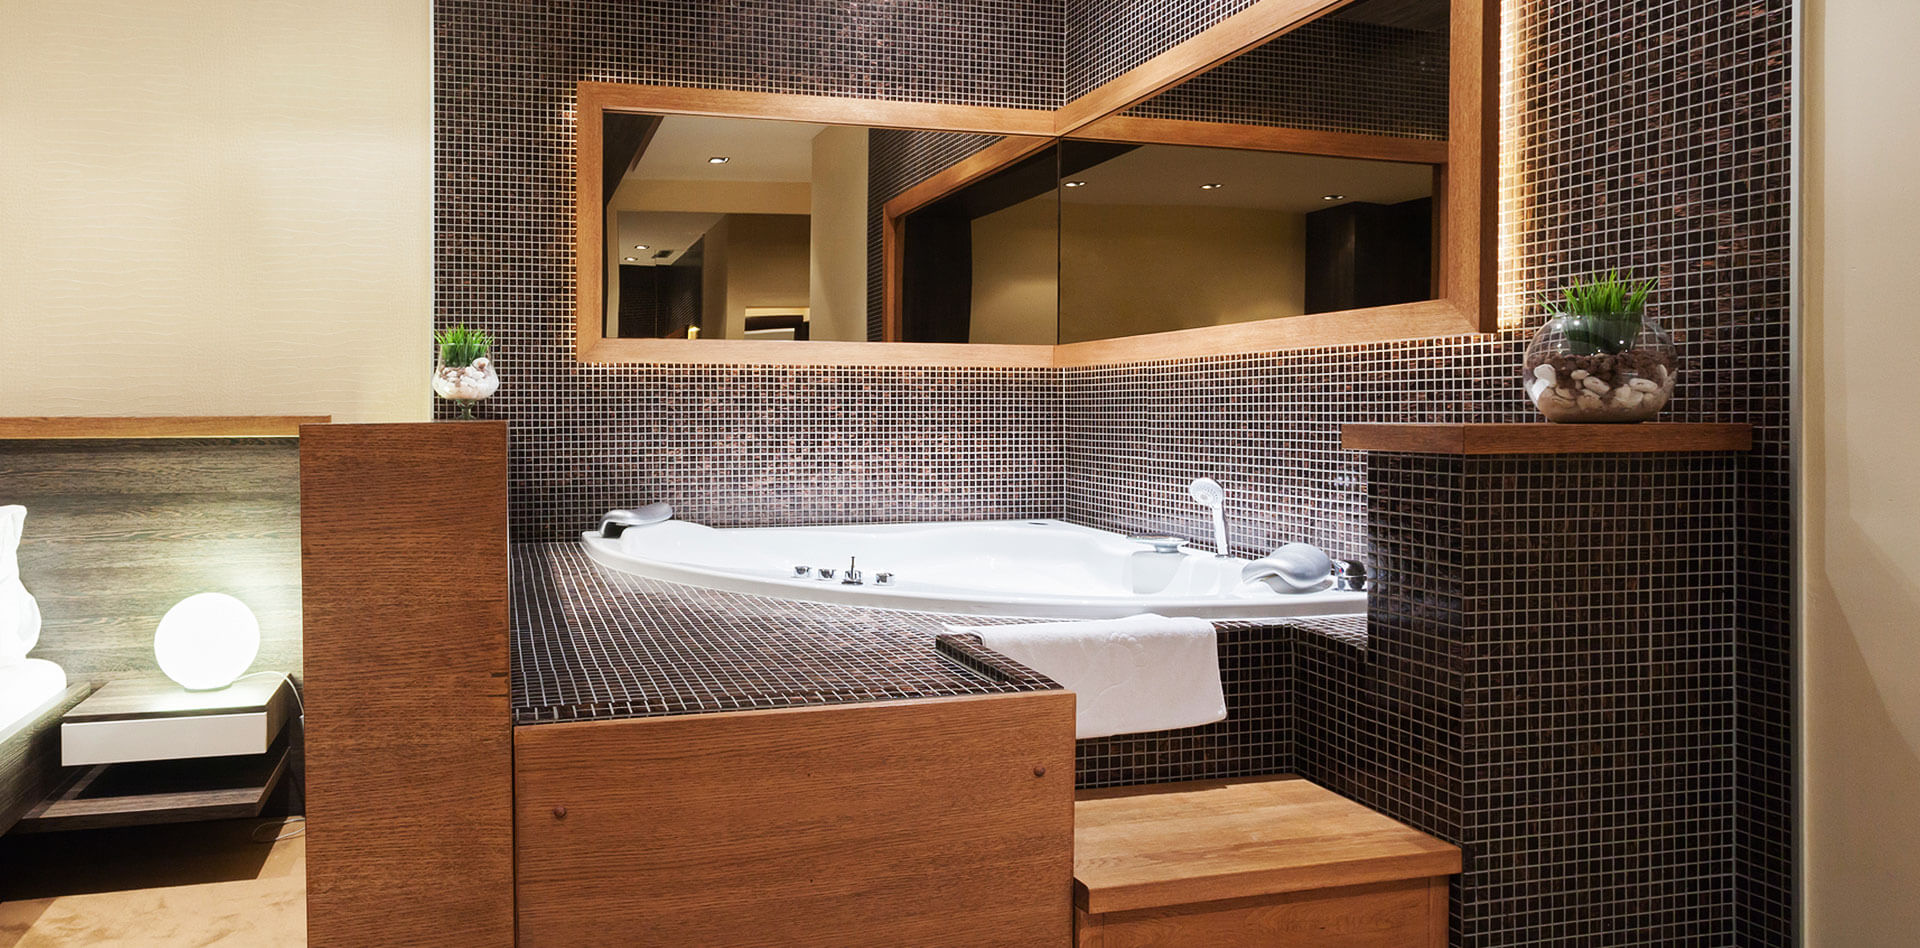 Badezimmer Sanierung Fliesen Design